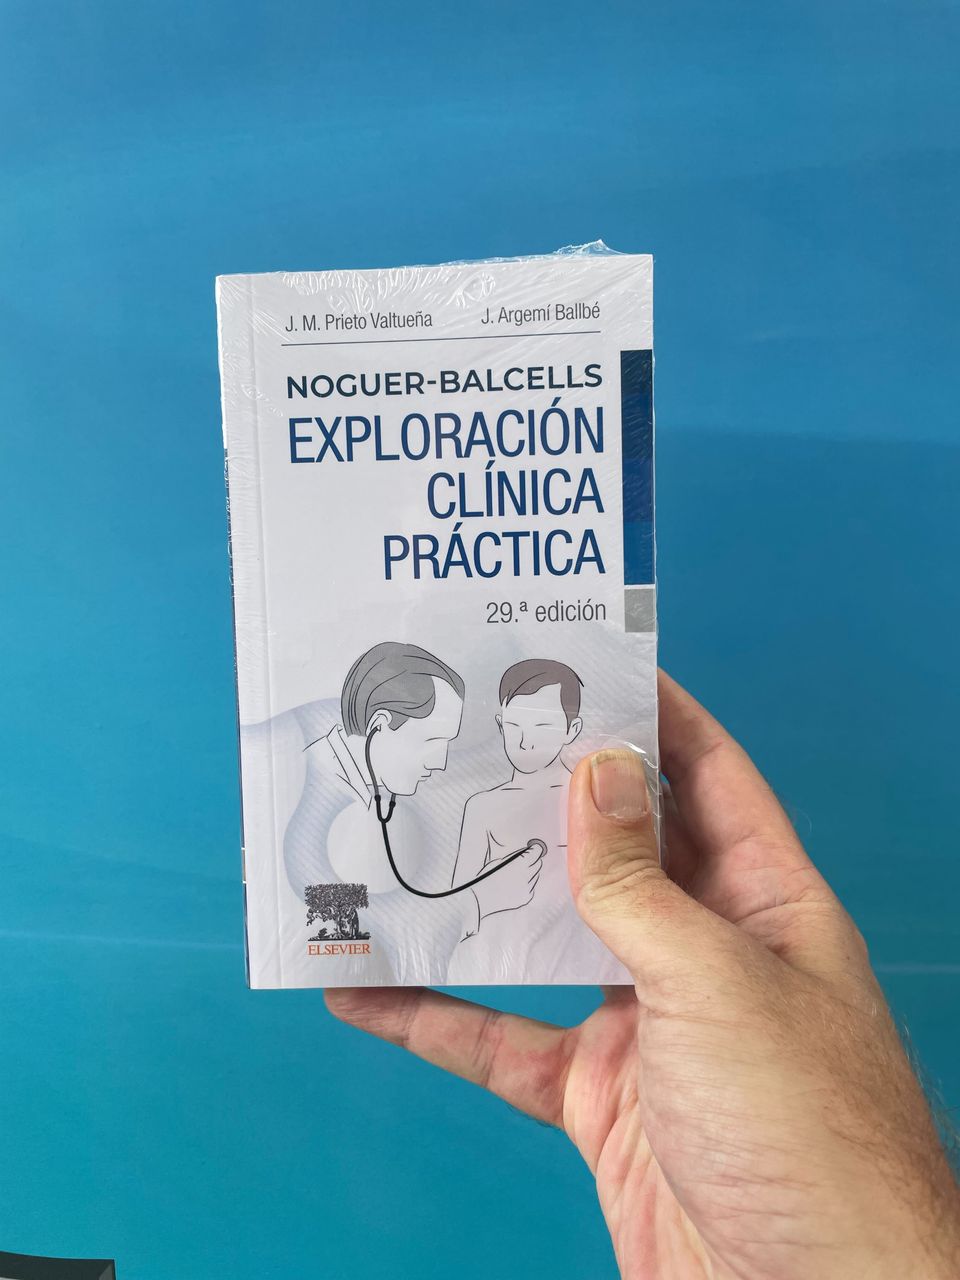 Noguer-Balcells. Exploración clínica práctica